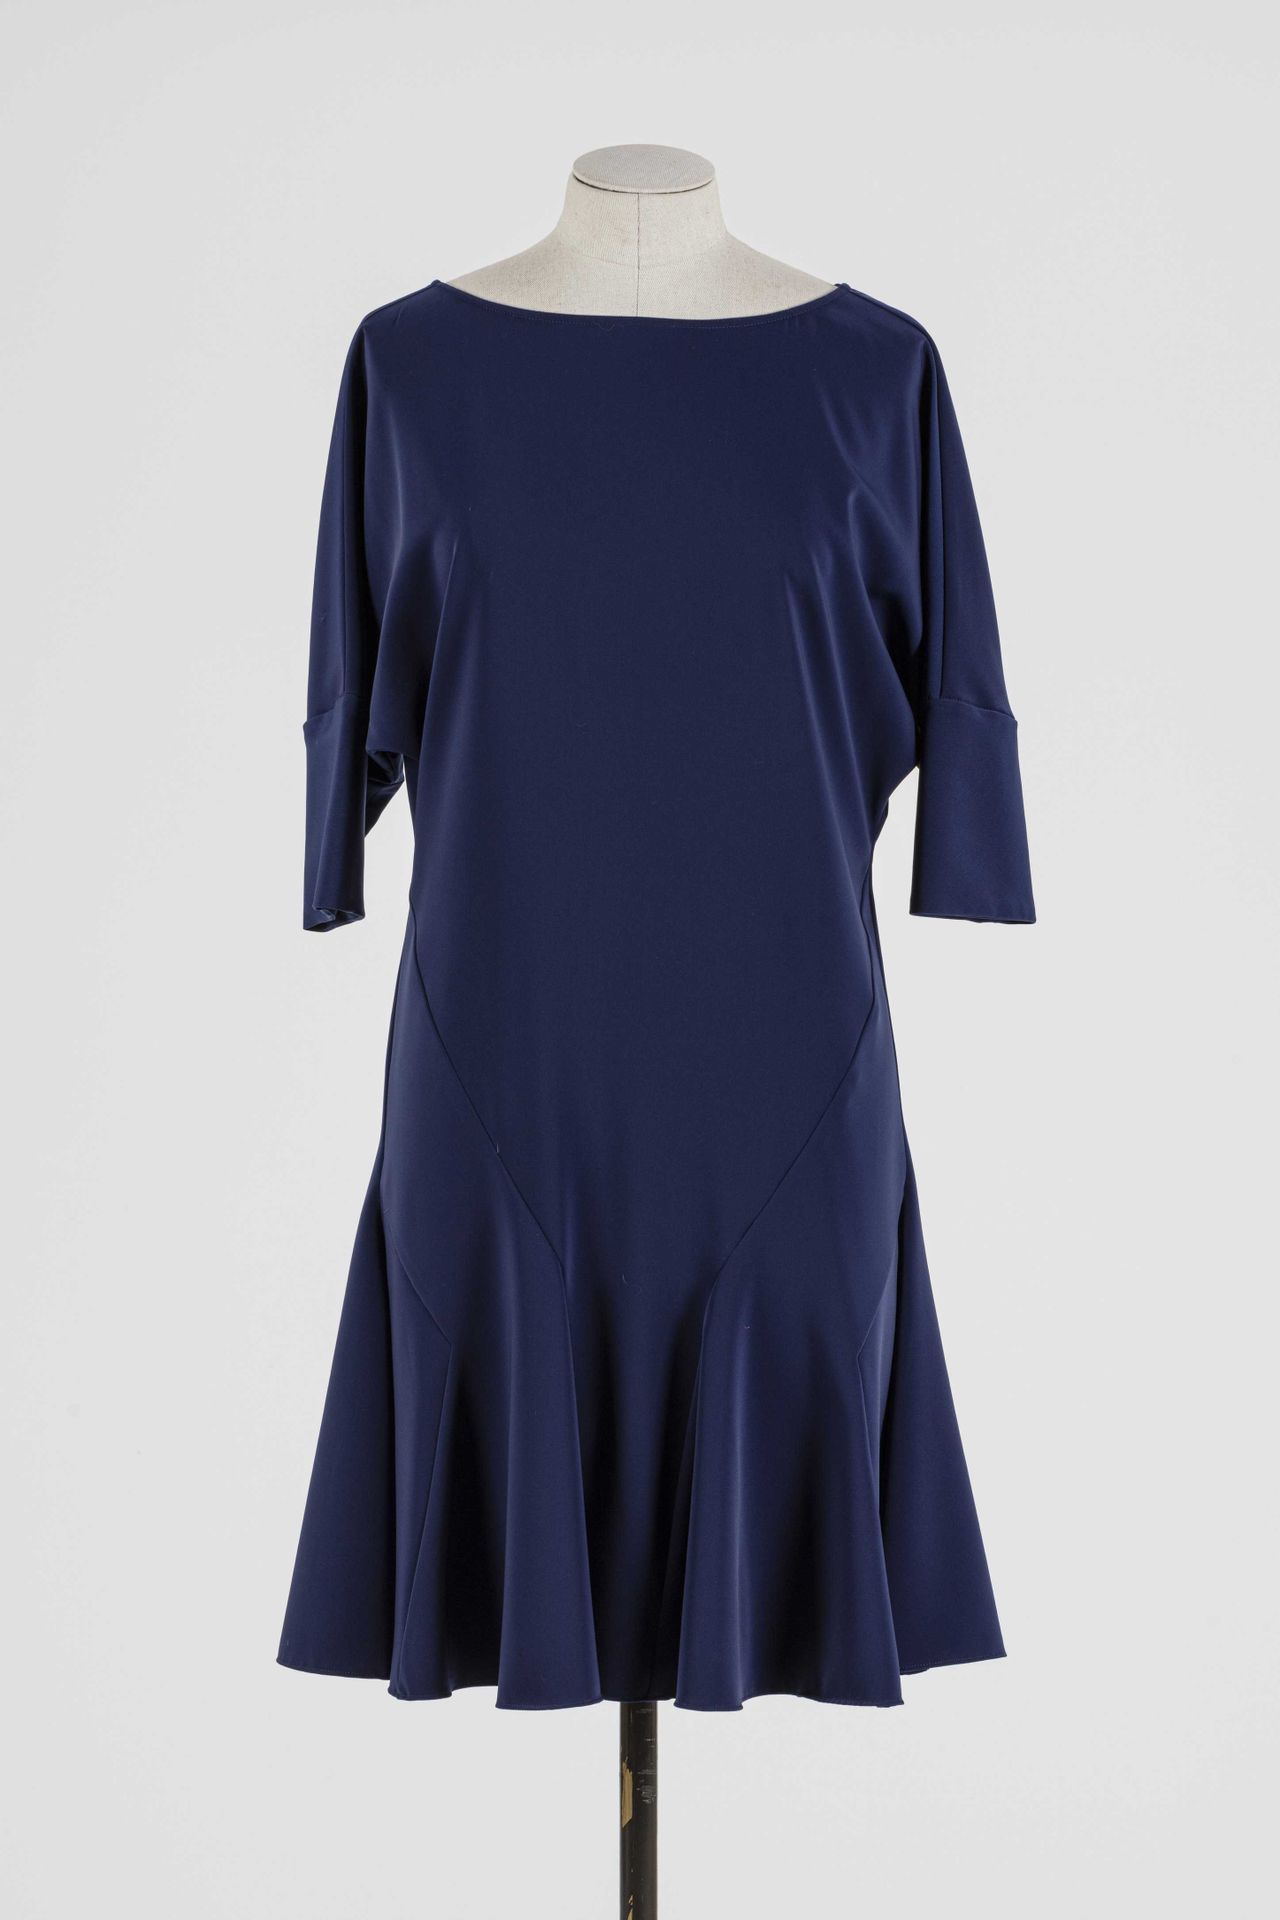 Null VERSACE: Kleid aus blauem Polyester , kurze Ärmel.

T. 36